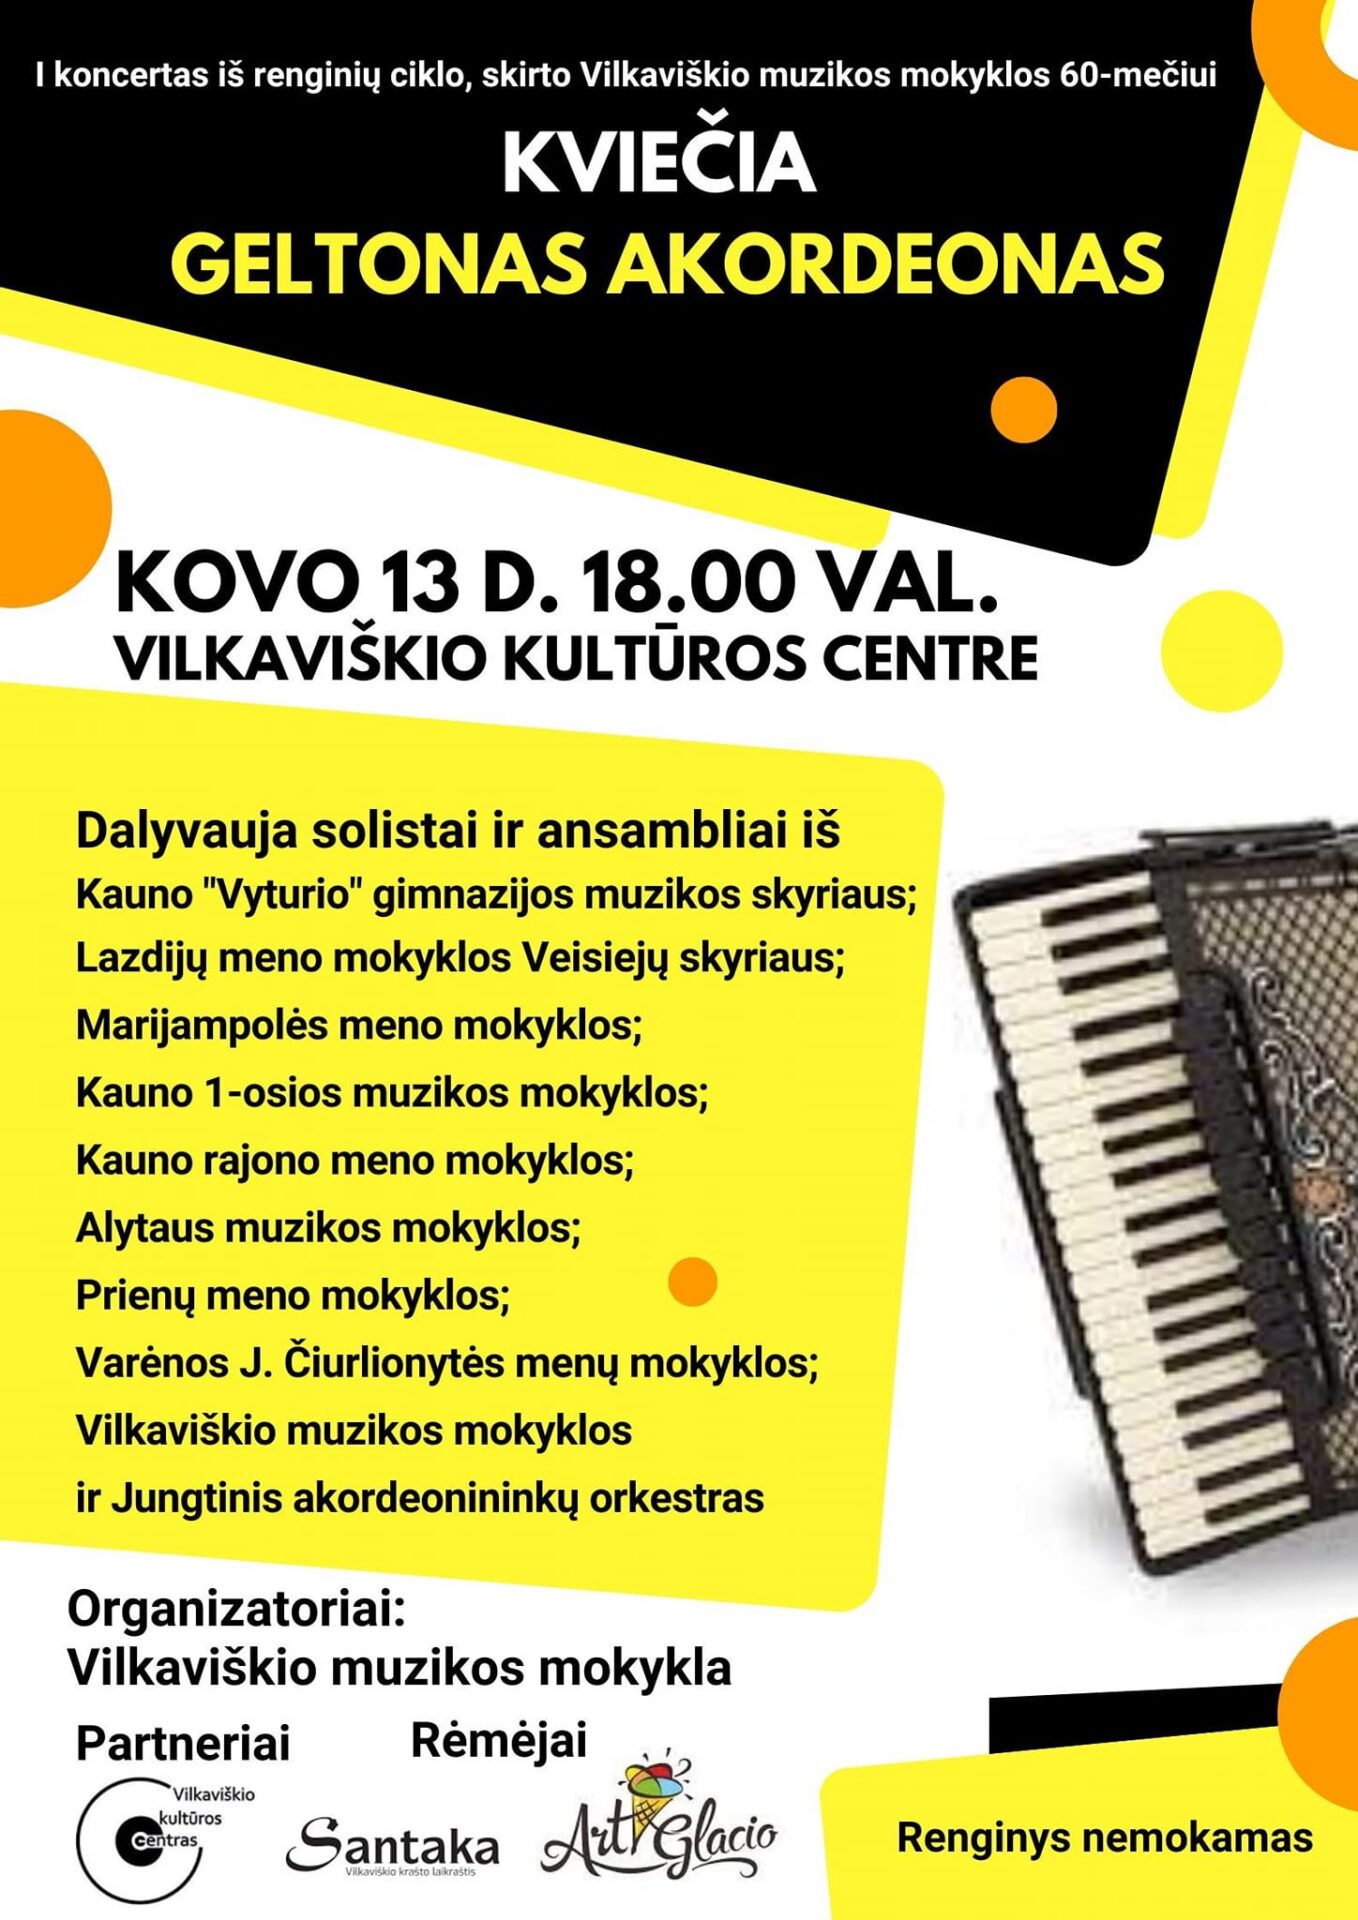 I-asis koncertas, skirtas Vilkaviškio muzikos mokyklos 60-mečiui